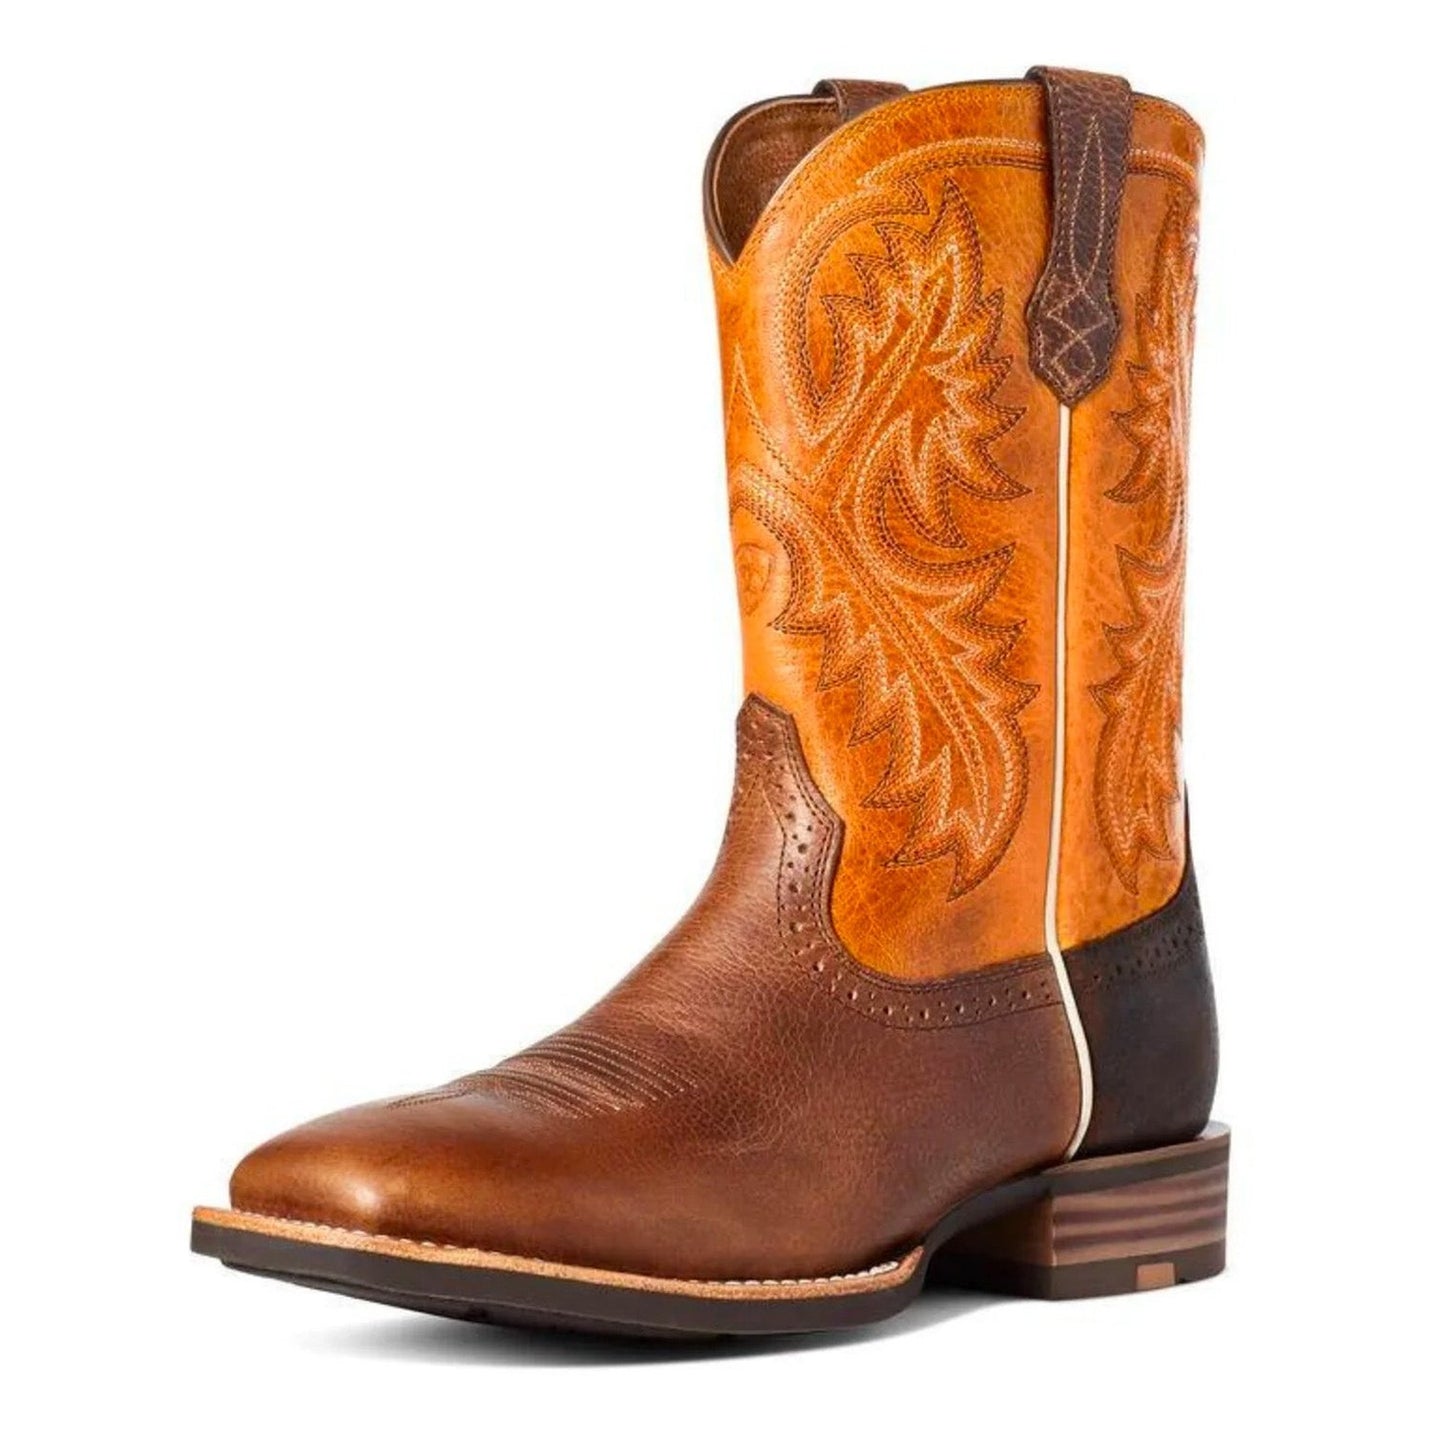 Ariat Men's Cowboy Boots Quickdraw 10035998